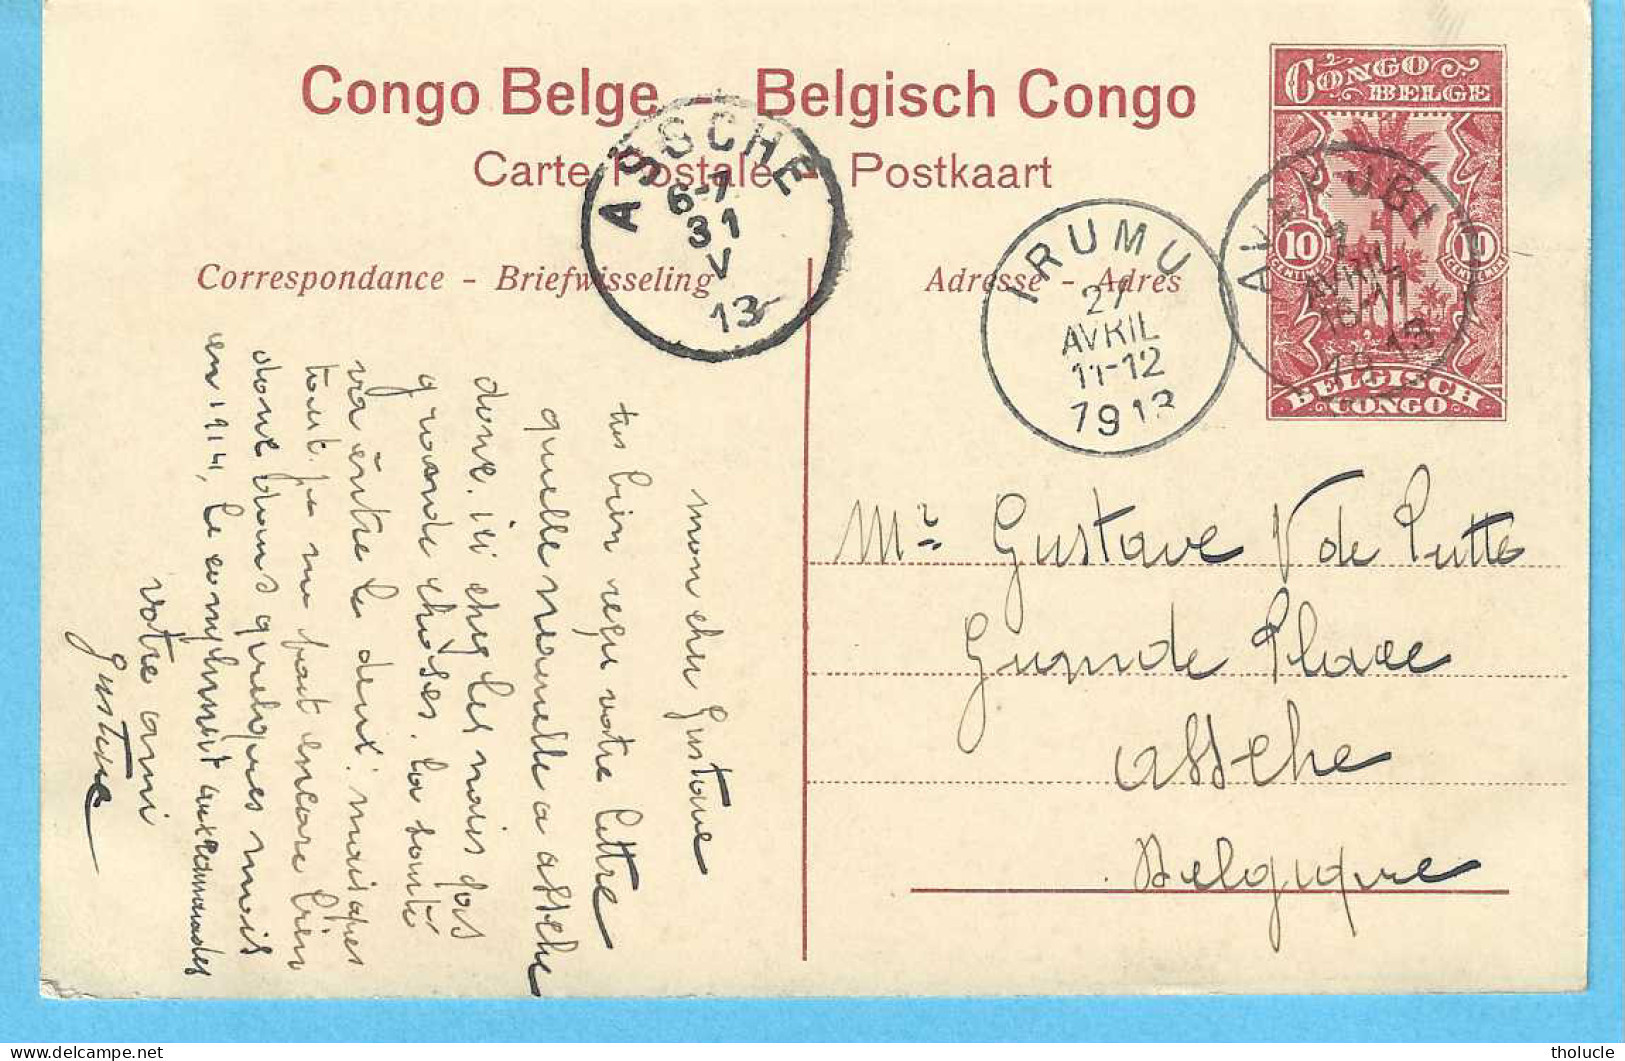 Belgisch Congo Belge-Entier Postal Illustré 10c-1913-Léopoldville-Les Bassins-De Dokken-Cachet-IRUMU-AVAKUBI-1913" - Entiers Postaux